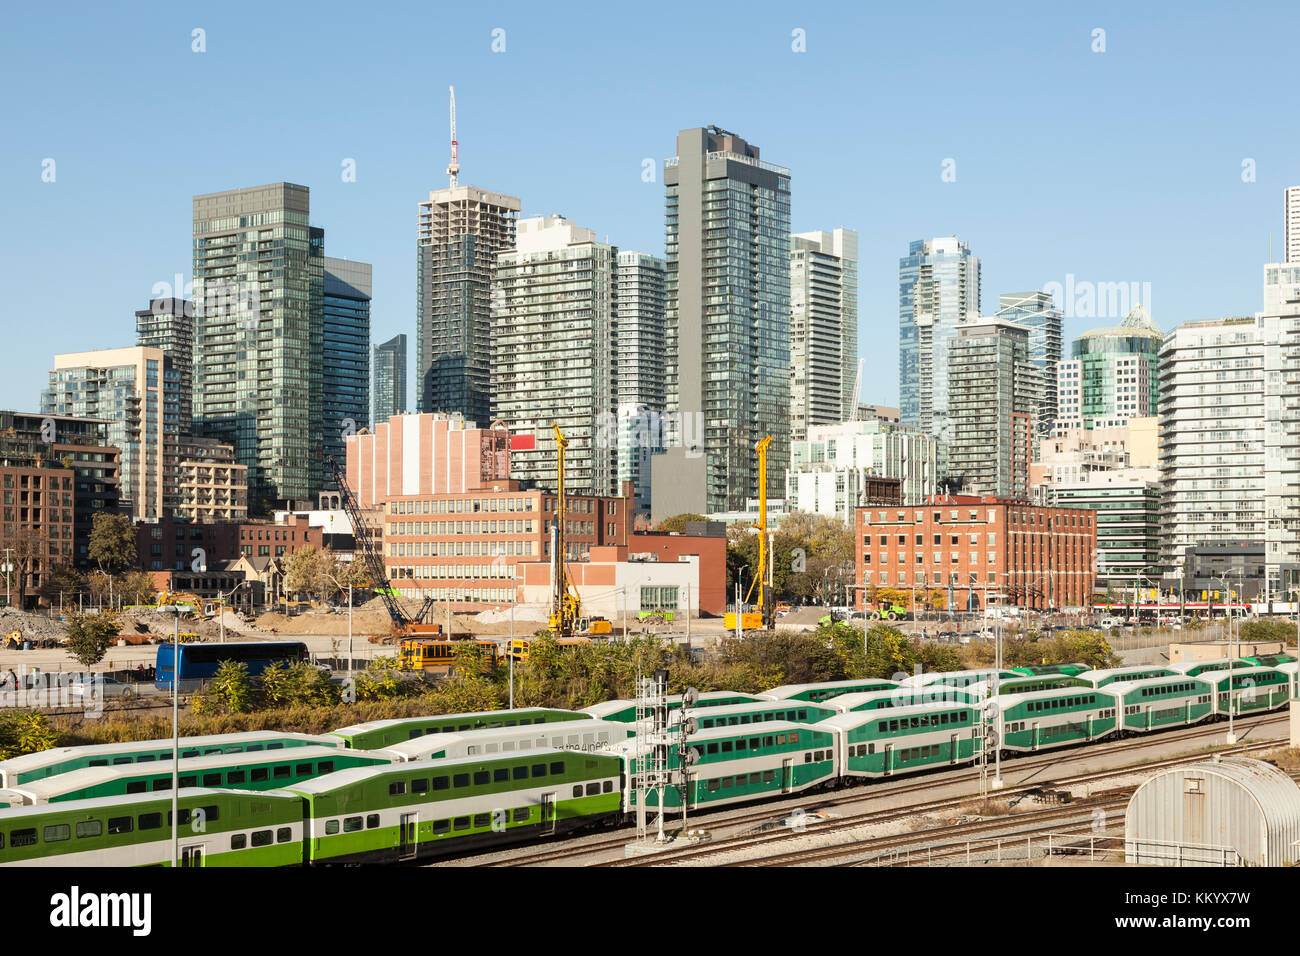 El horizonte de Toronto Downtown con un ferrocarril en primer plano. La ciudad de Toronto, Canadá Foto de stock